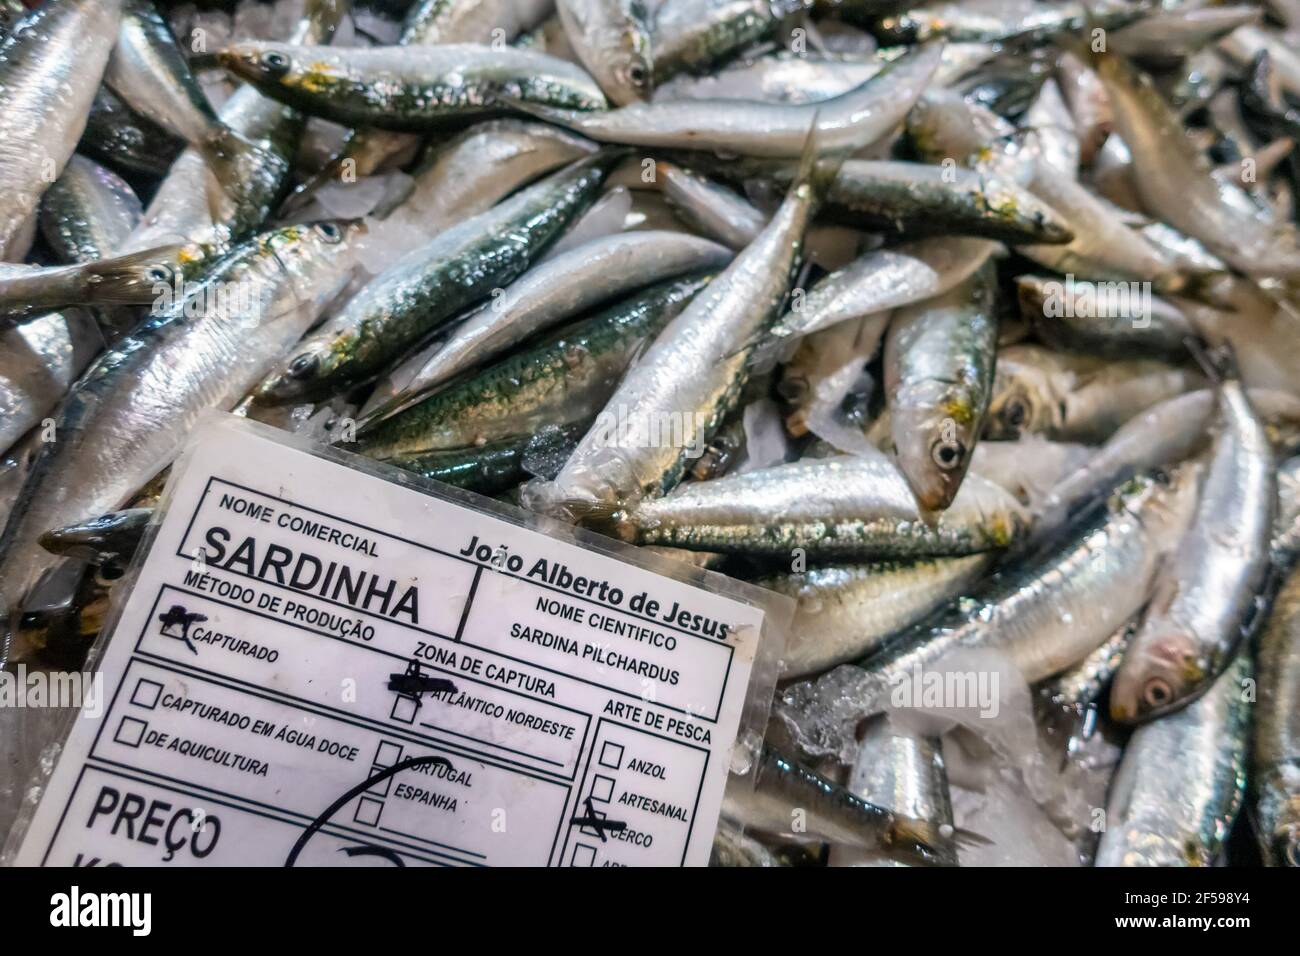 Sardines fraîches sur le marché du poisson, Algarve, Portugal Banque D'Images